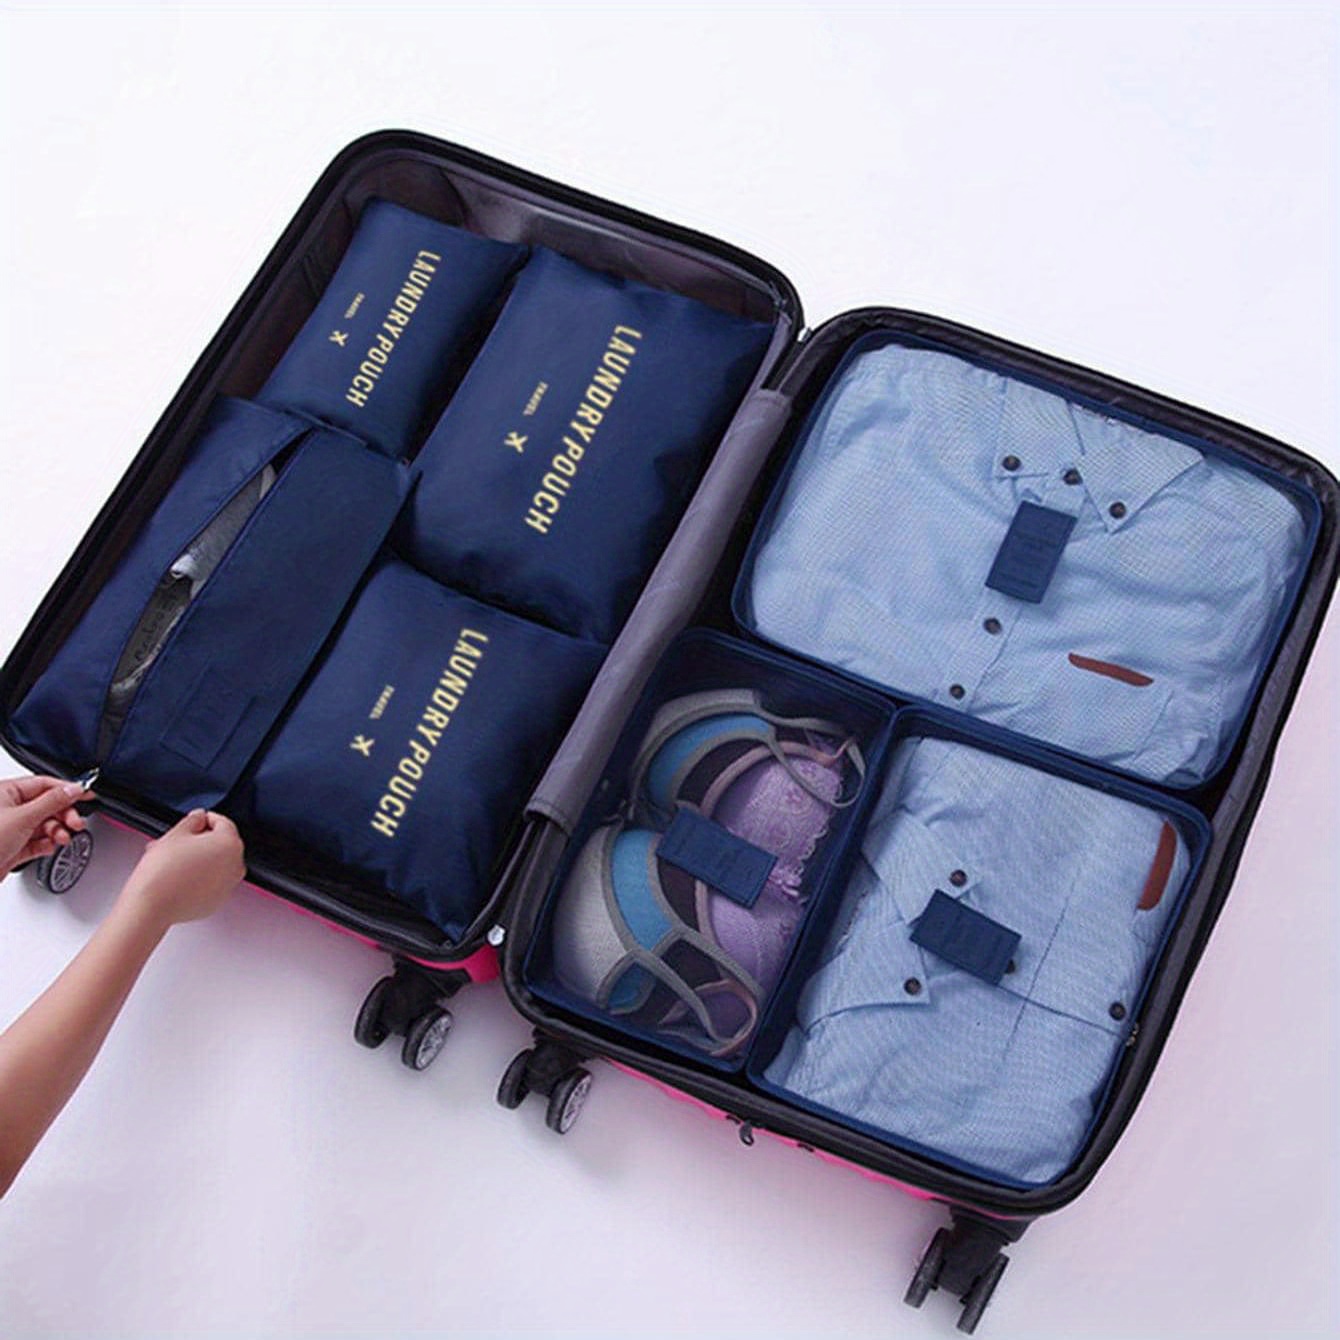 DIMJ Juego de 8 cubos de equipaje para viaje, juego de bolsas organizadoras  de maleta, cubos de viaje ligeros para maleta, organizadores de equipaje